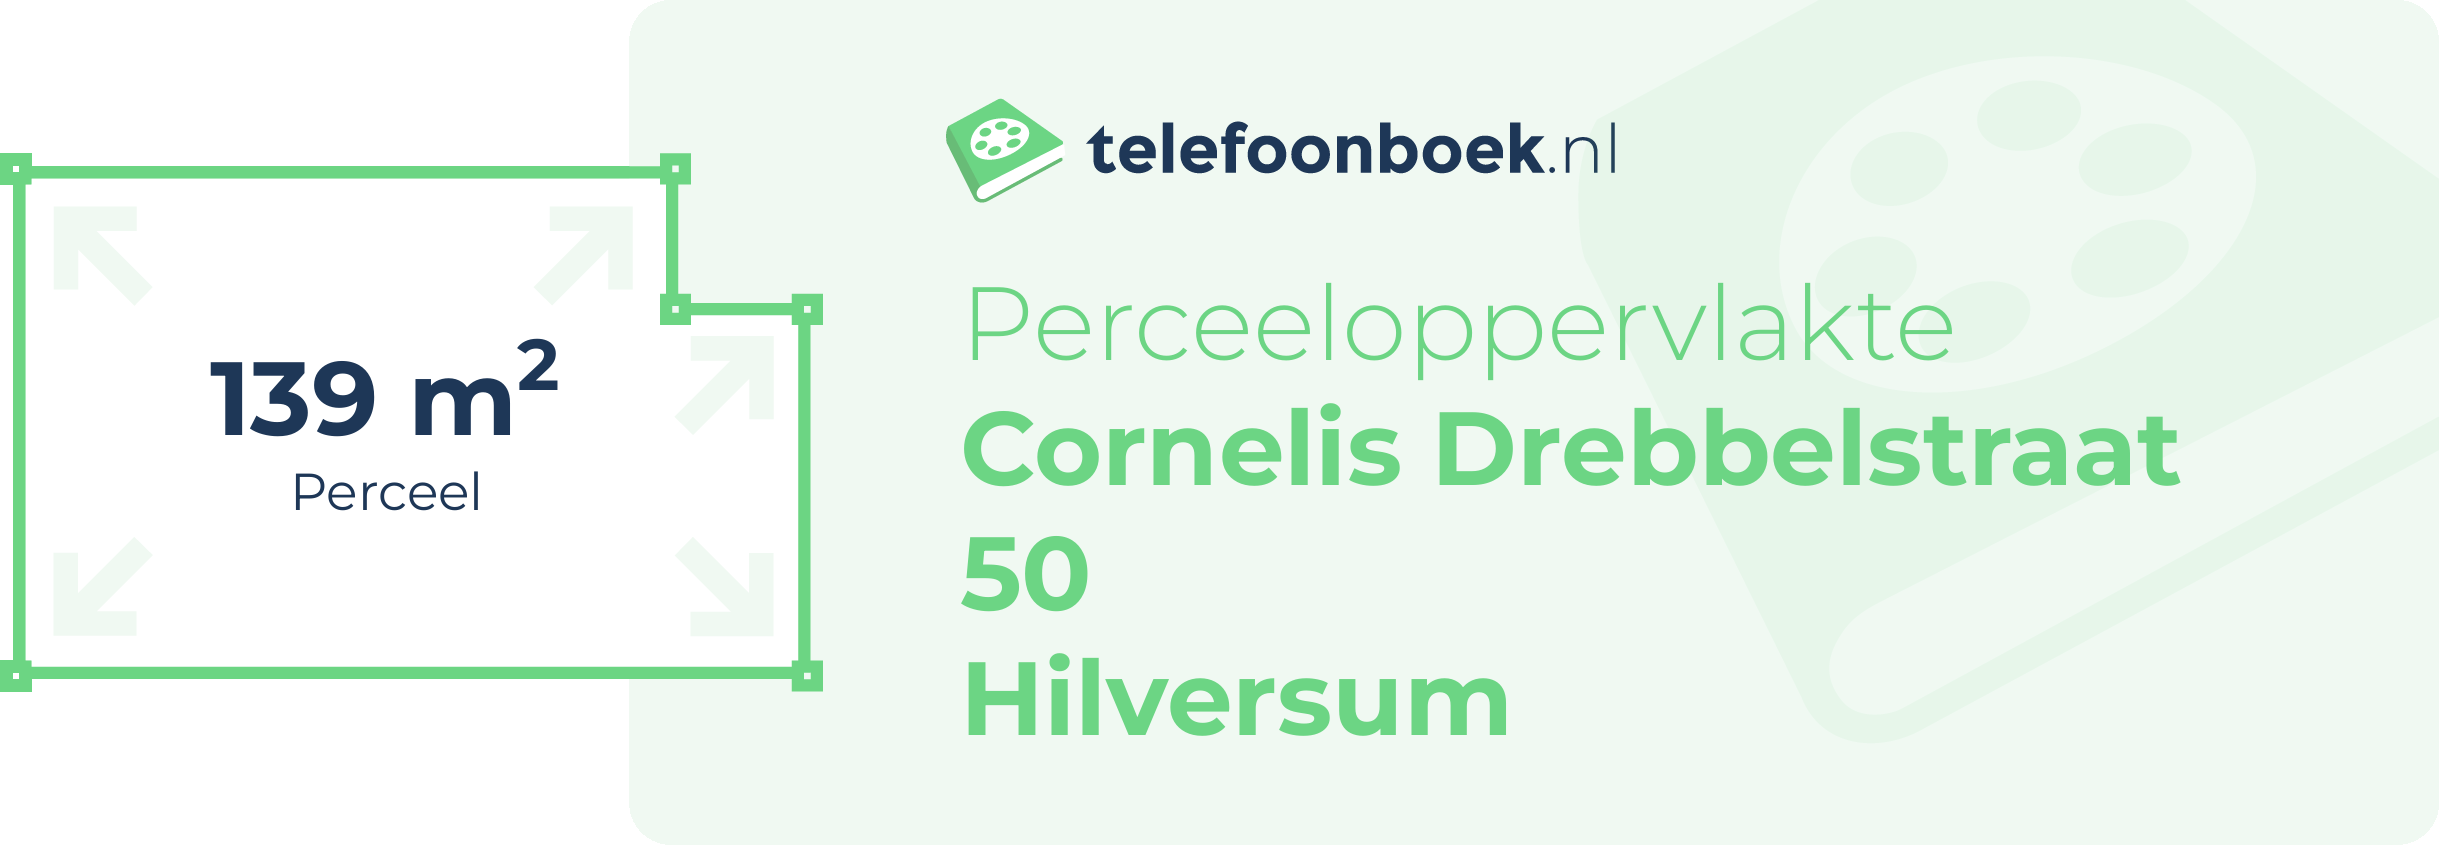 Perceeloppervlakte Cornelis Drebbelstraat 50 Hilversum